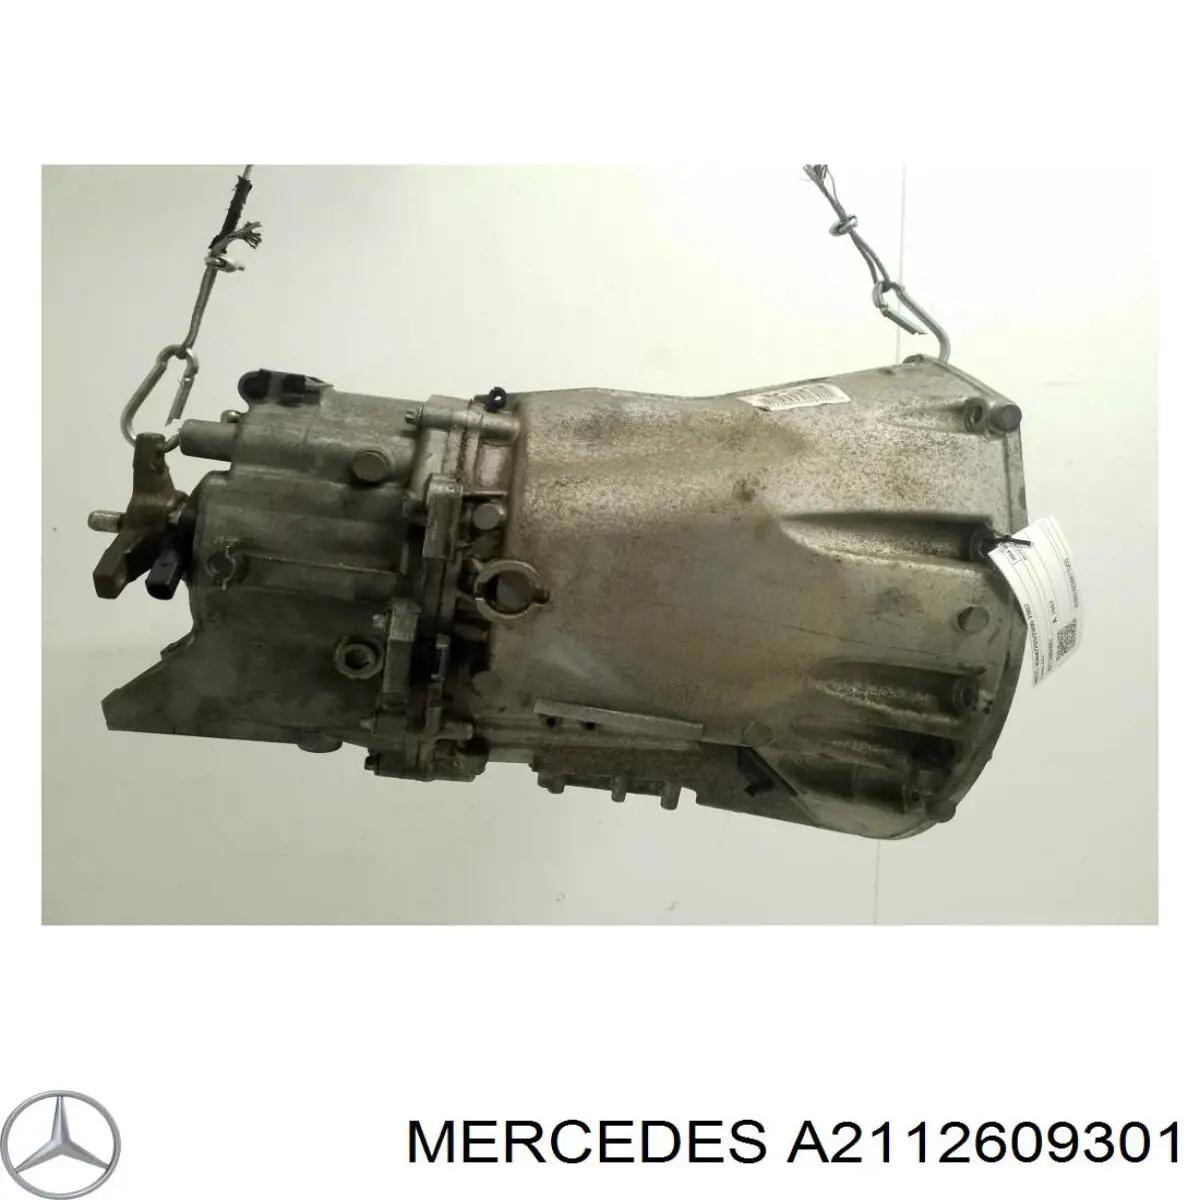 A2112609301 Mercedes caja de cambios mecánica, completa